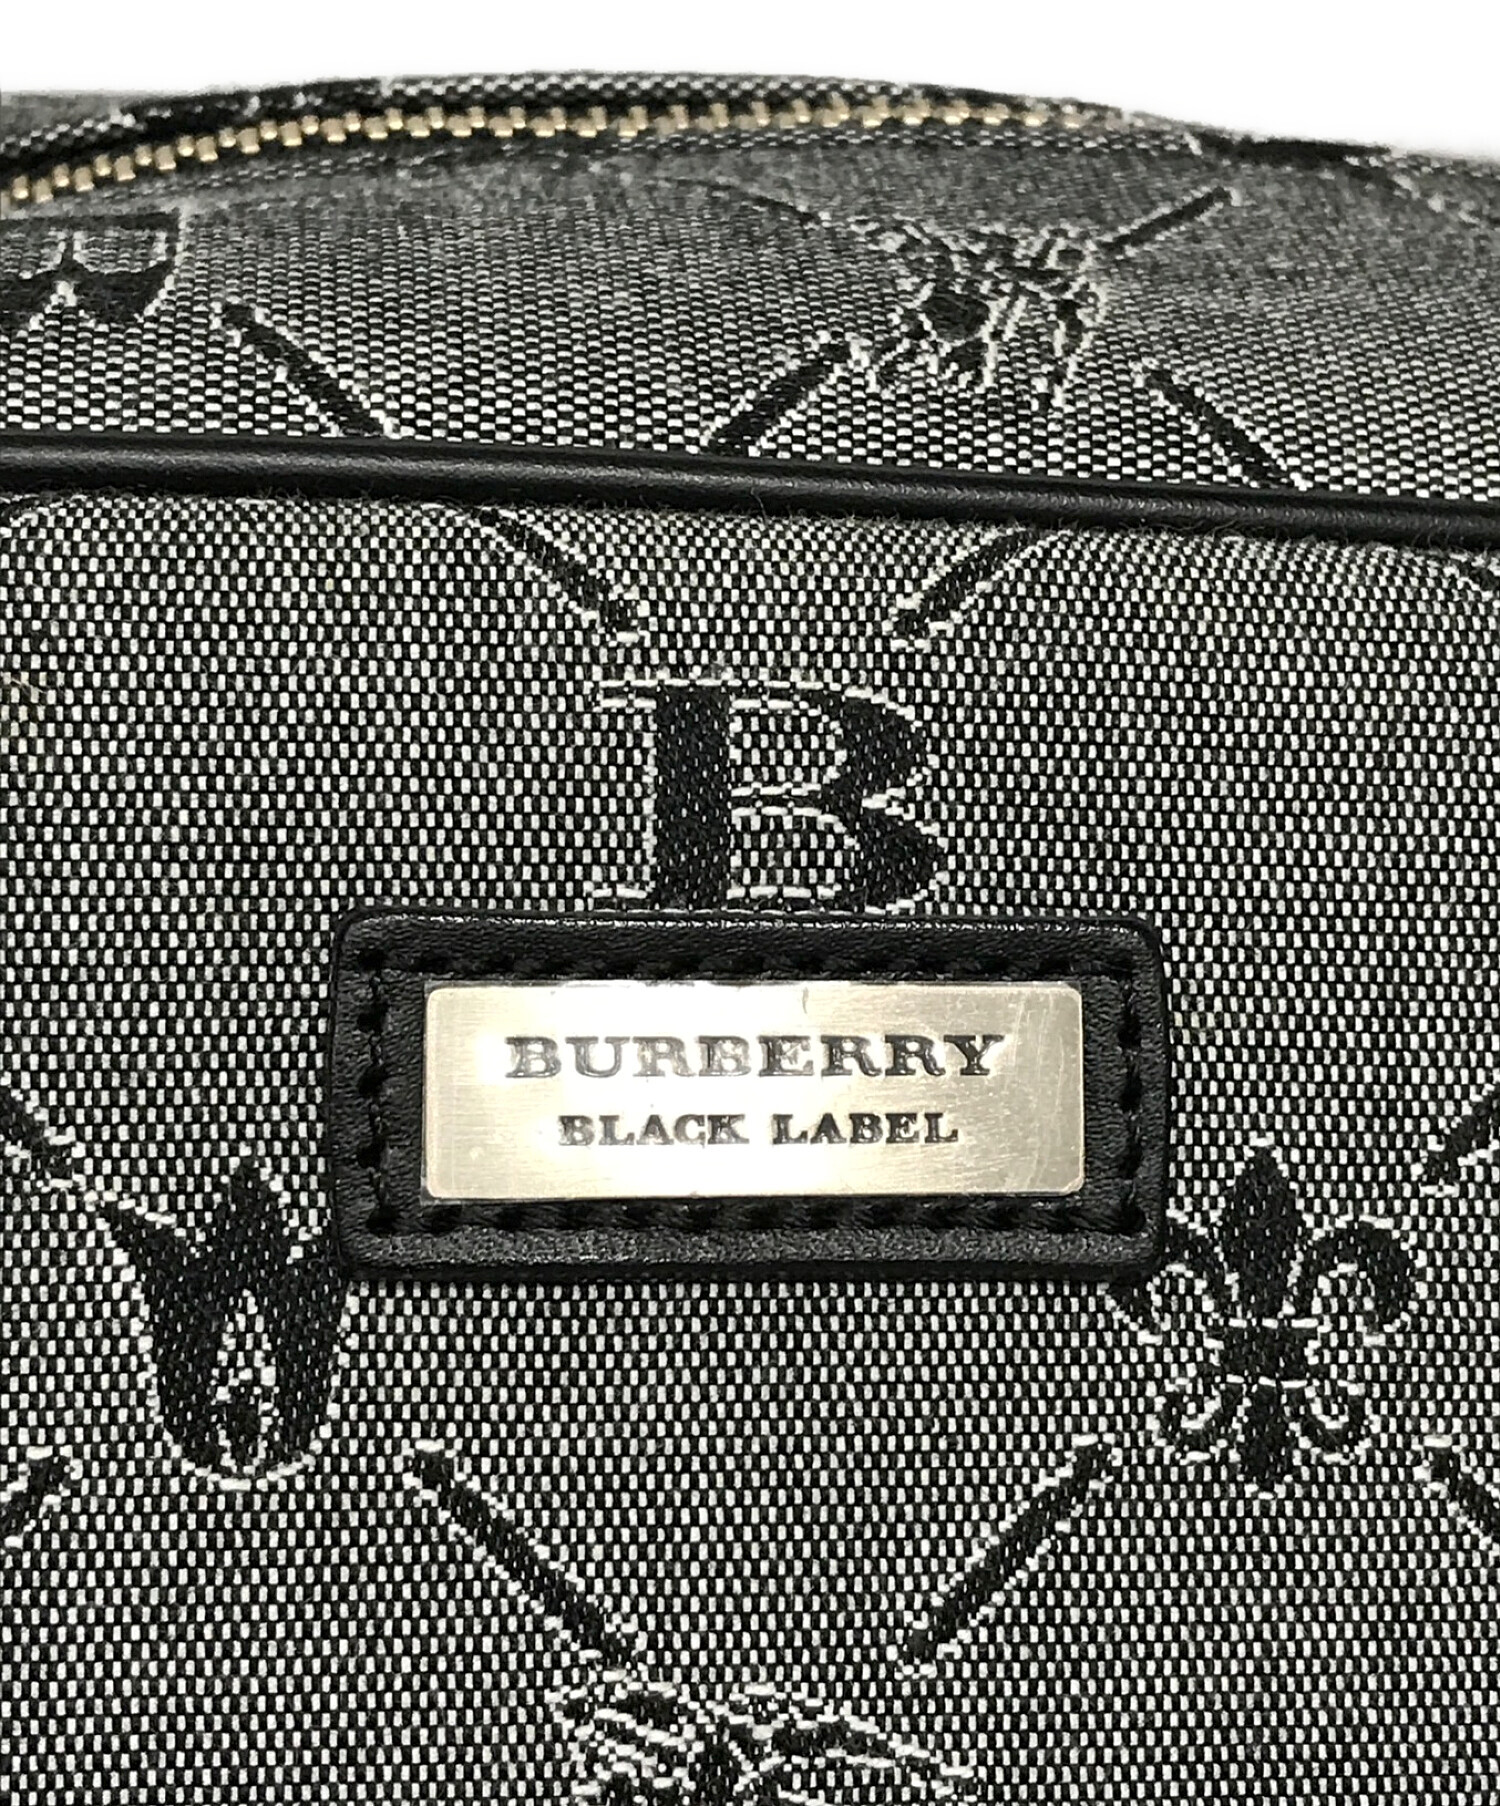 BURBERRY BLACK LABEL (バーバリーブラックレーベル) ボストンバッグ グレー